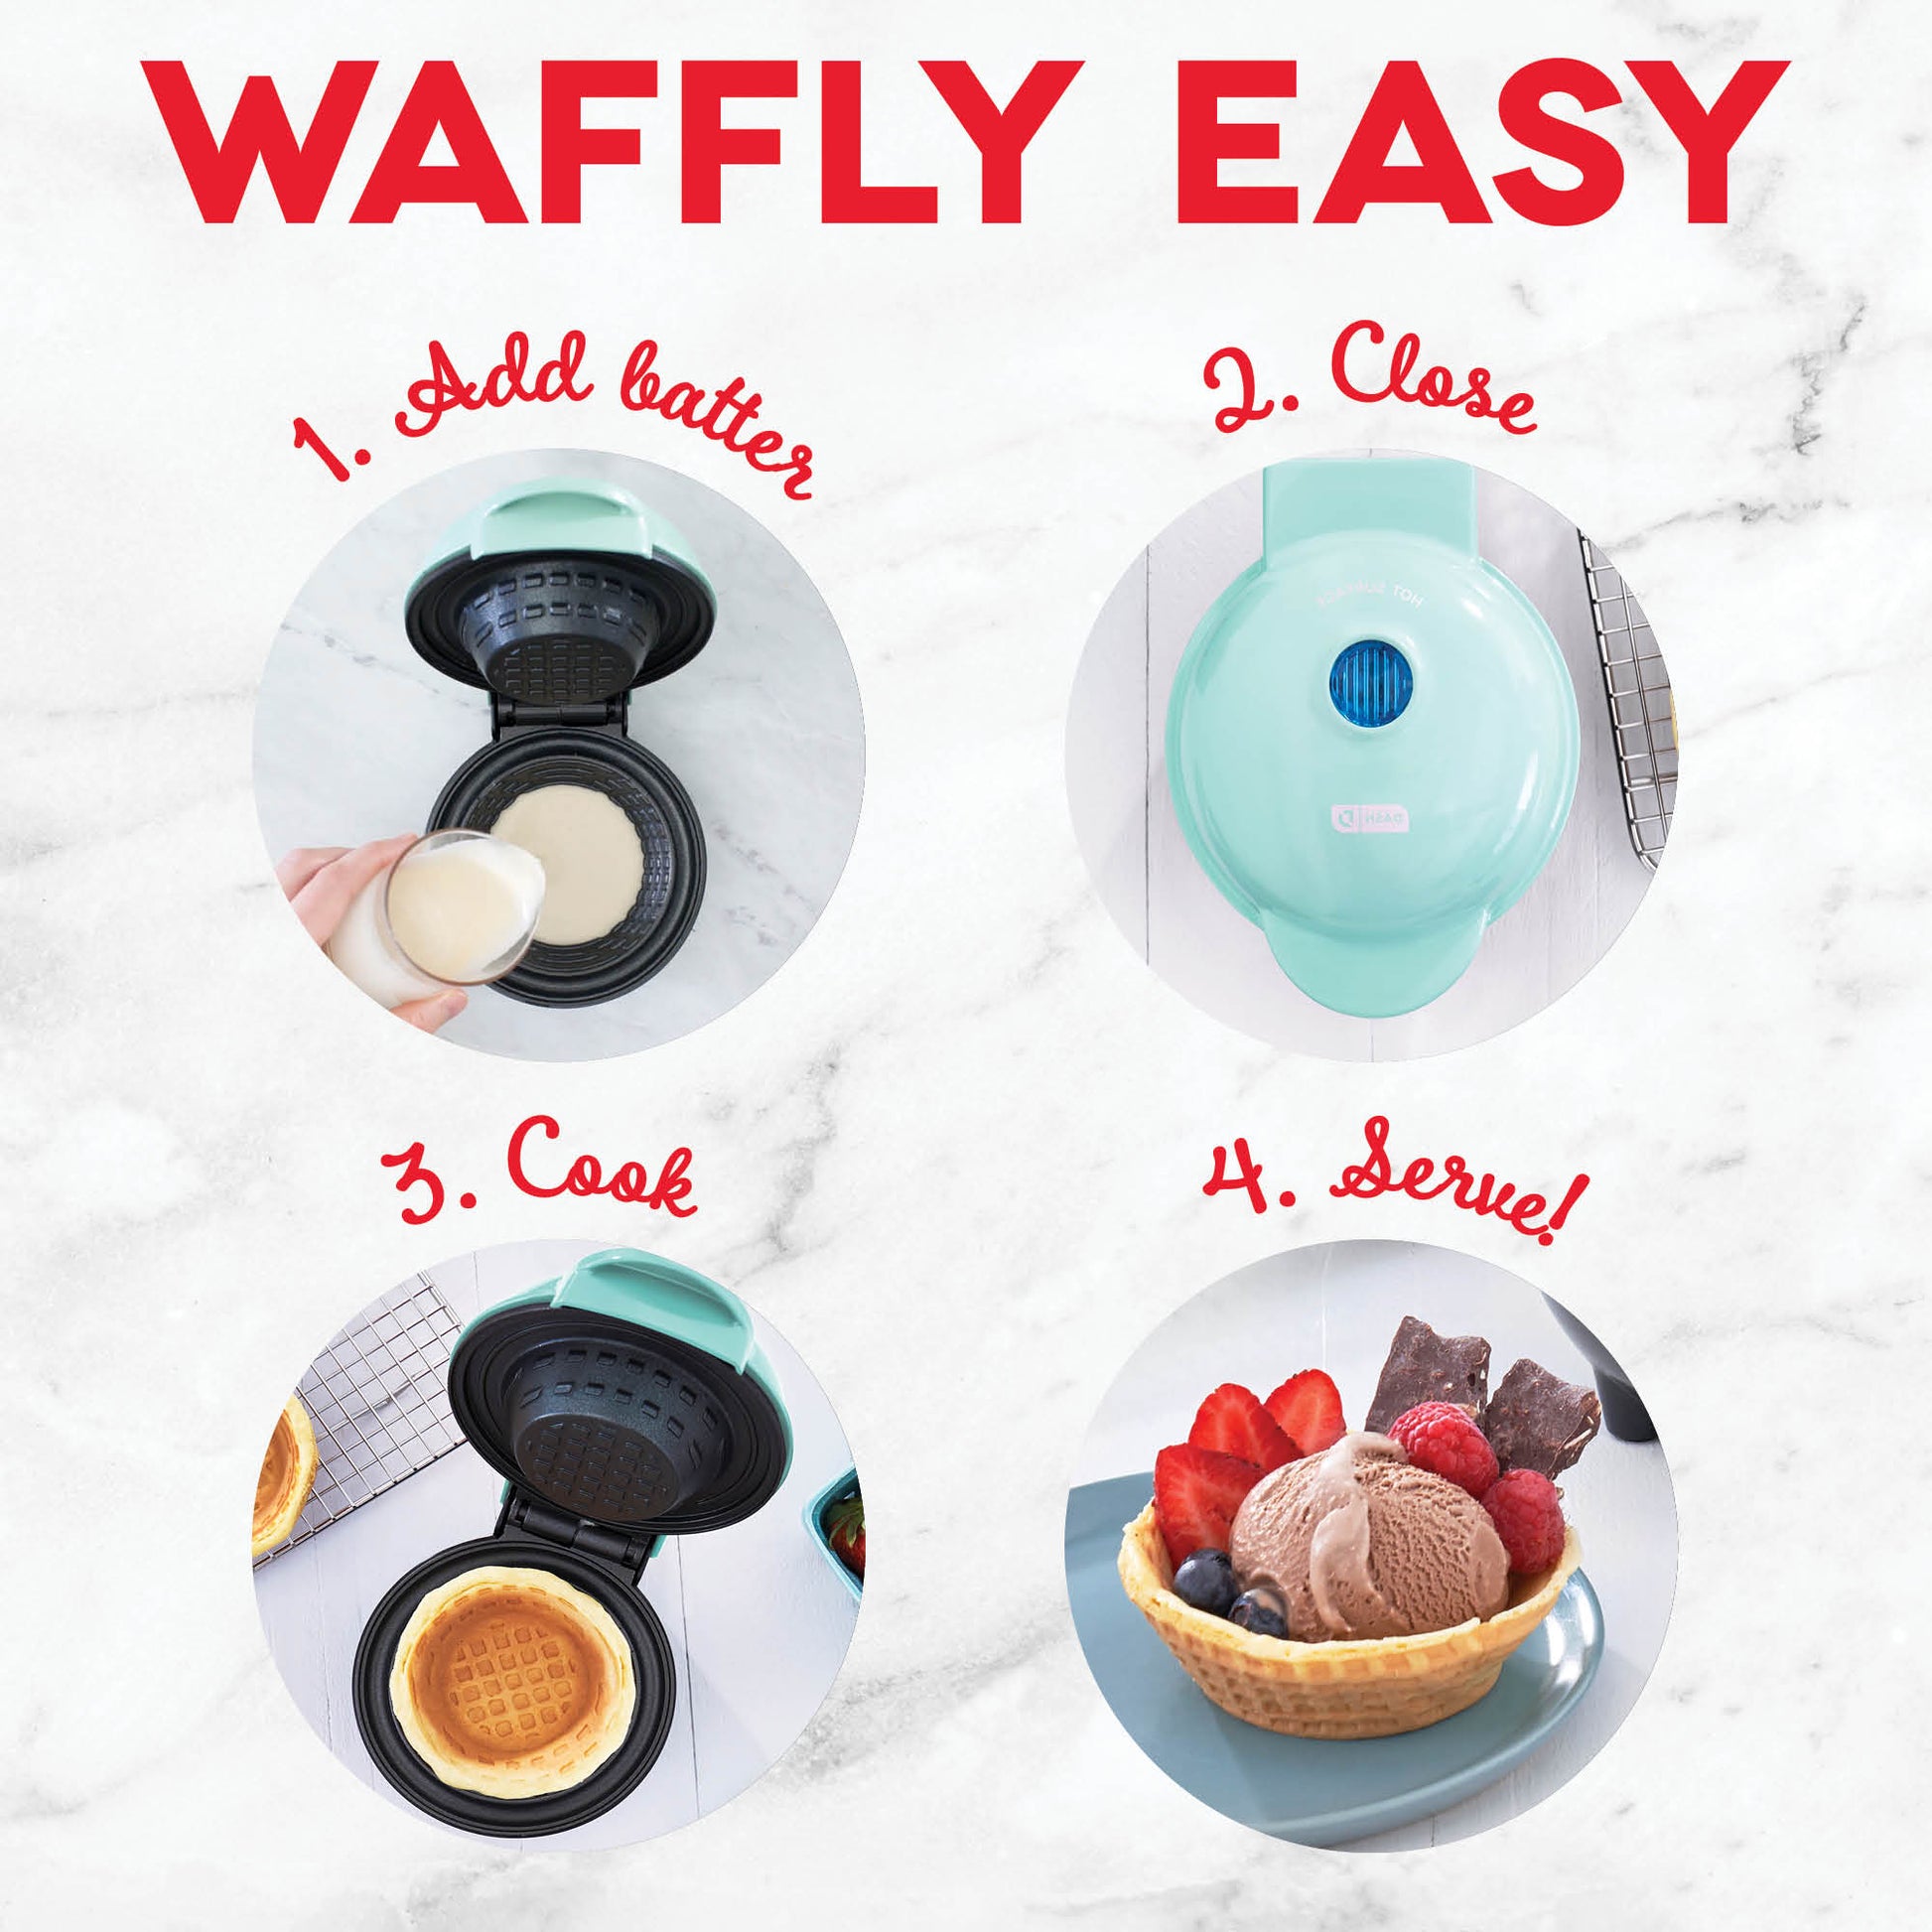 Dash Mini Waffle Bowl Maker Aqua 